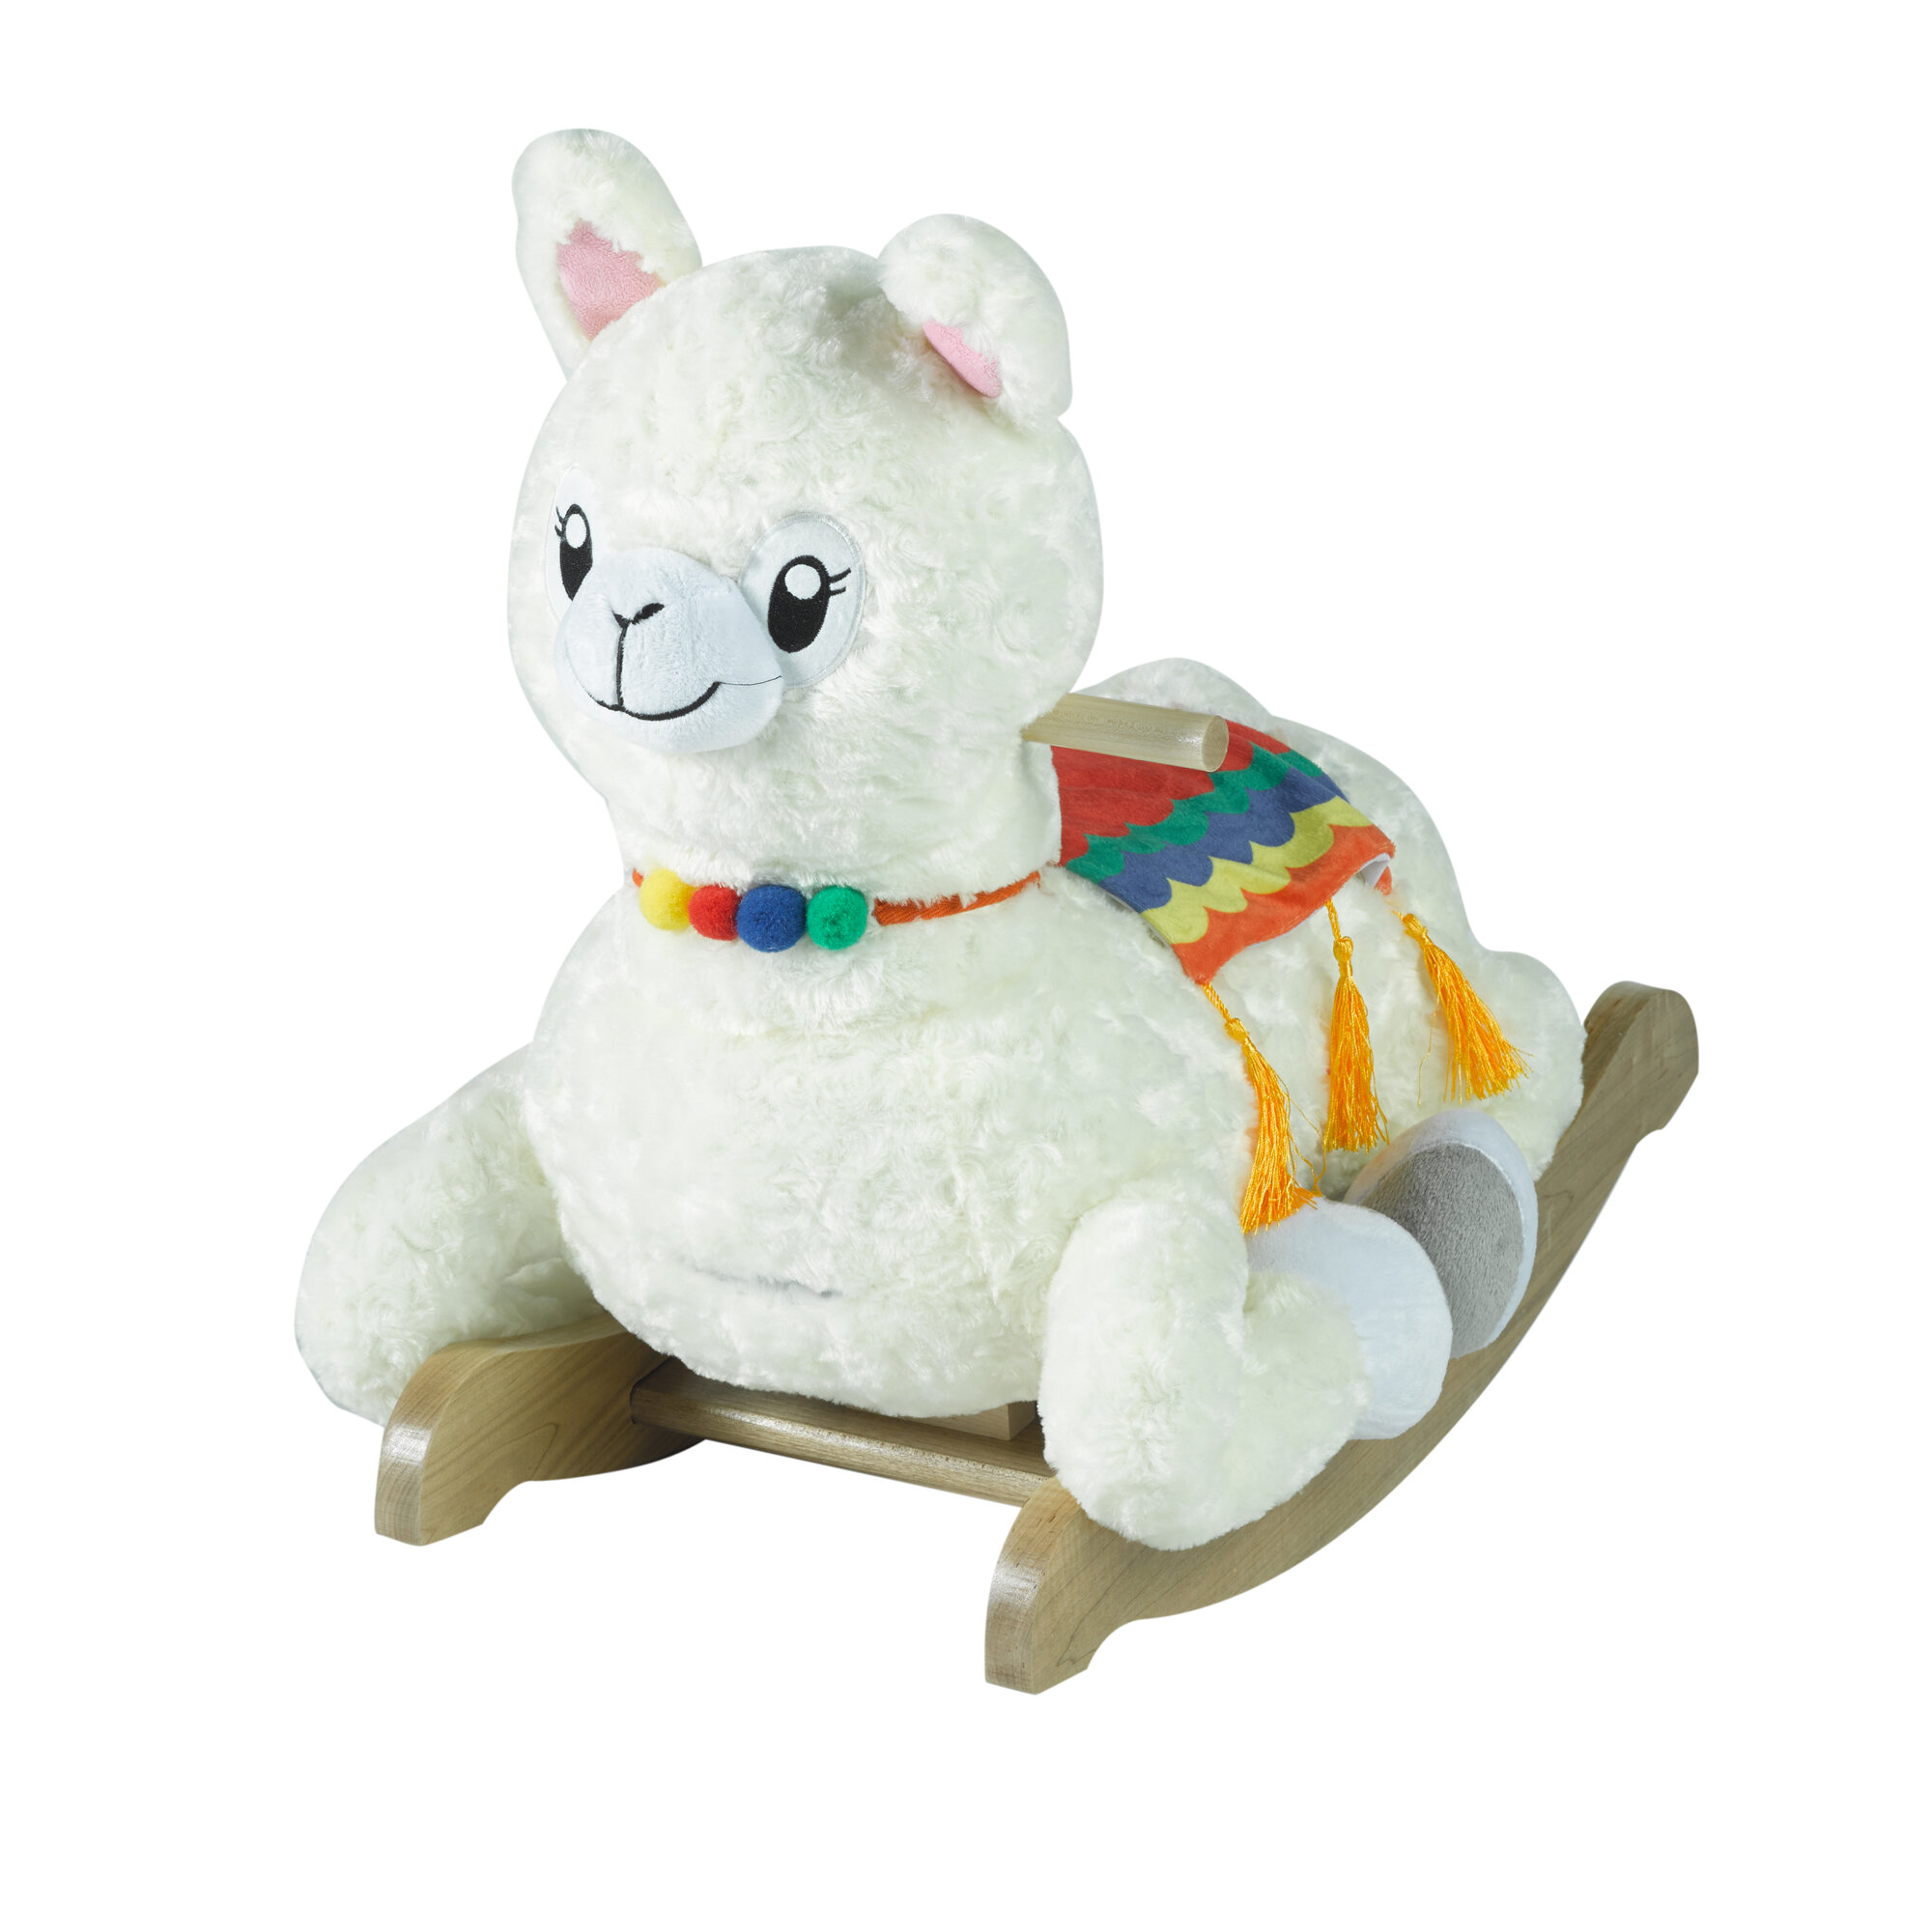 dolly llama stuffed animal